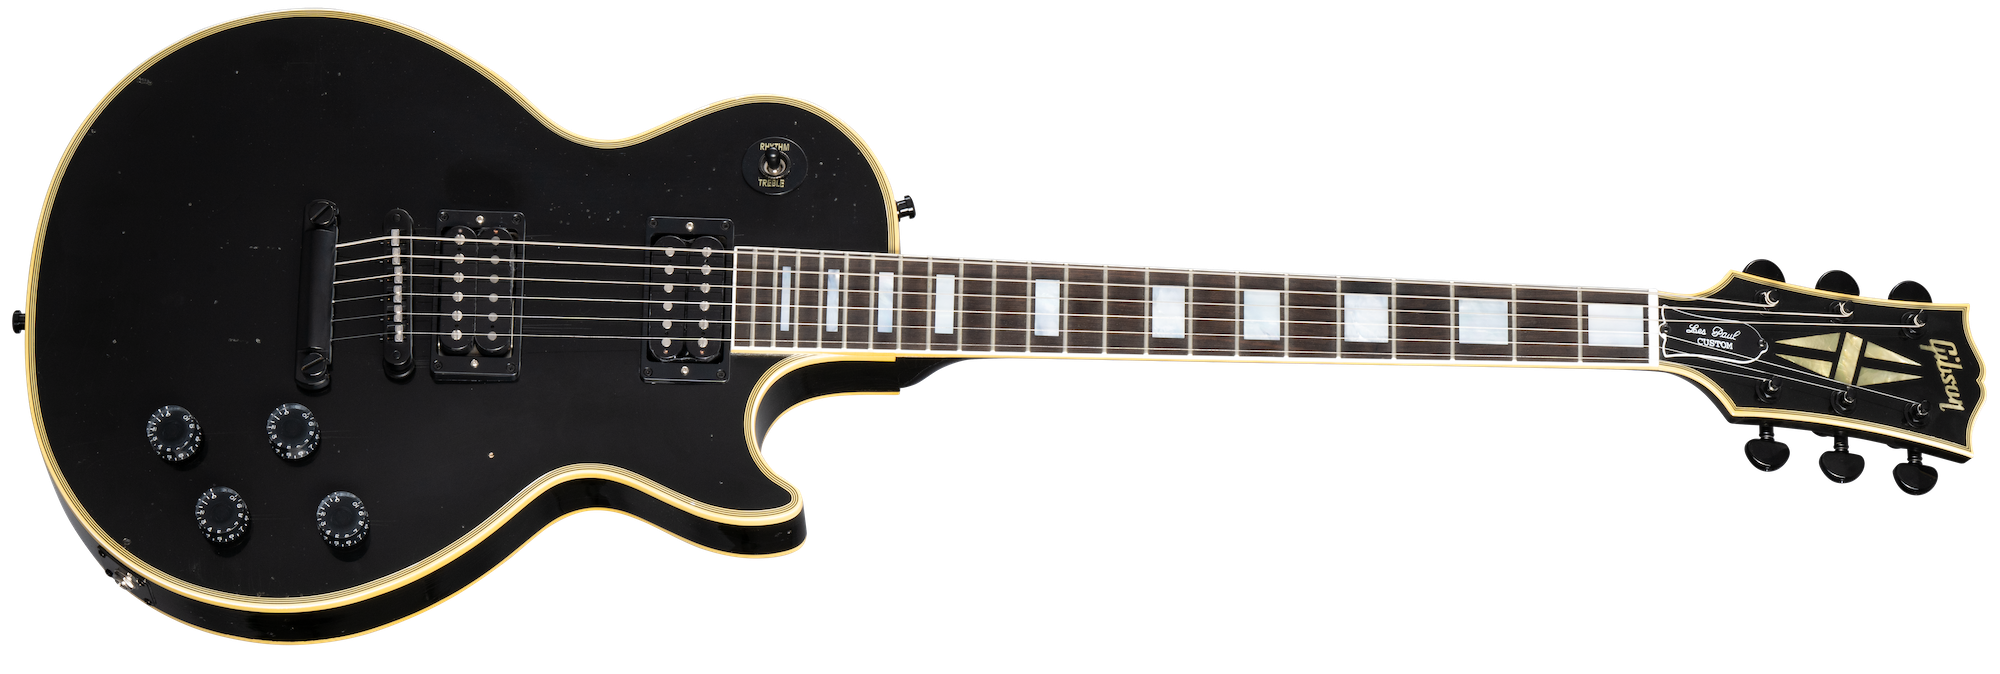 Kirk Hammett 1989 Les Paul Custom Ebony